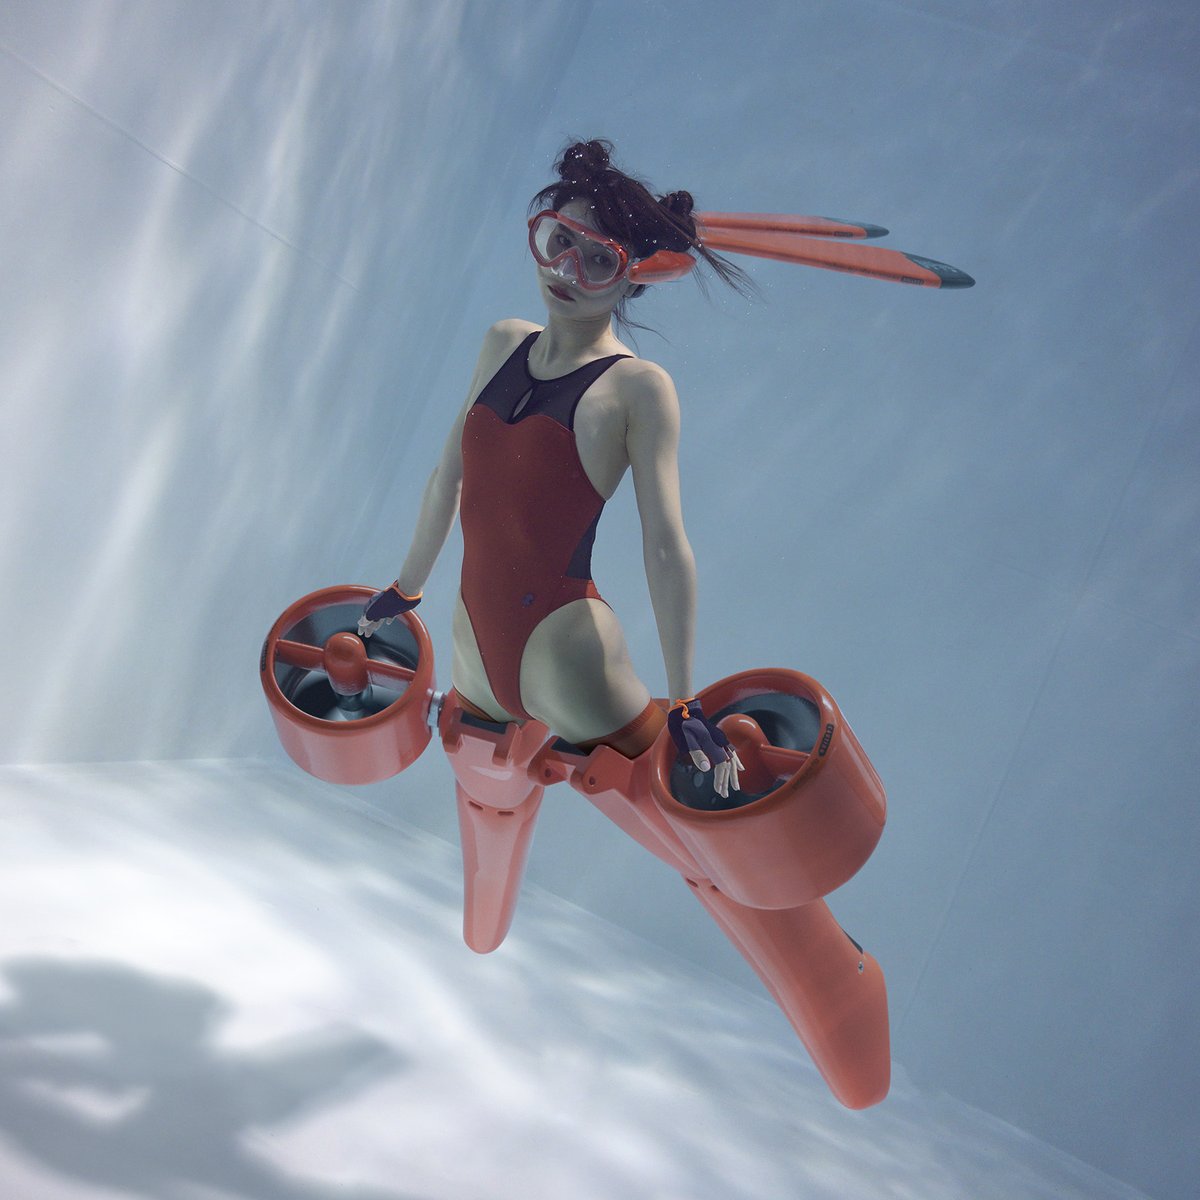 ViiVii 2077 (VERMILION) Visual: Manabu Koga Diver: Aimi Swimsuit: Pool Sider #viivii #水中撮影 #水中モデル #ダイビング